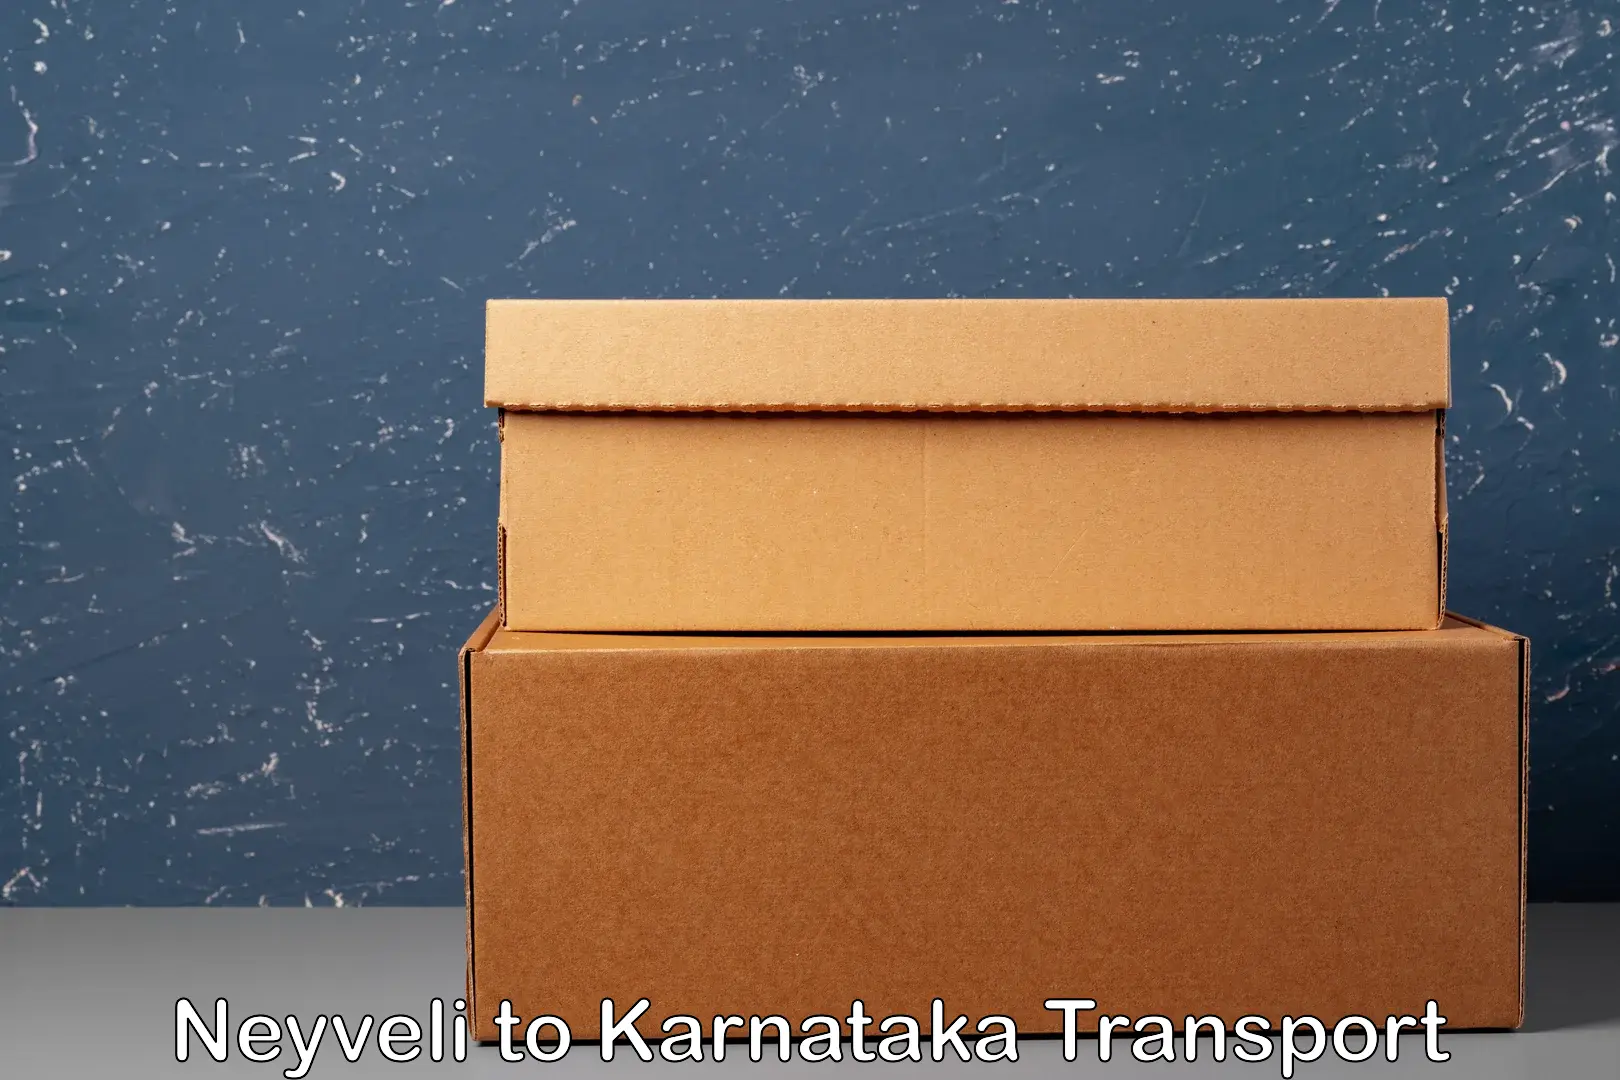 Sending bike to another city Neyveli to Karnataka